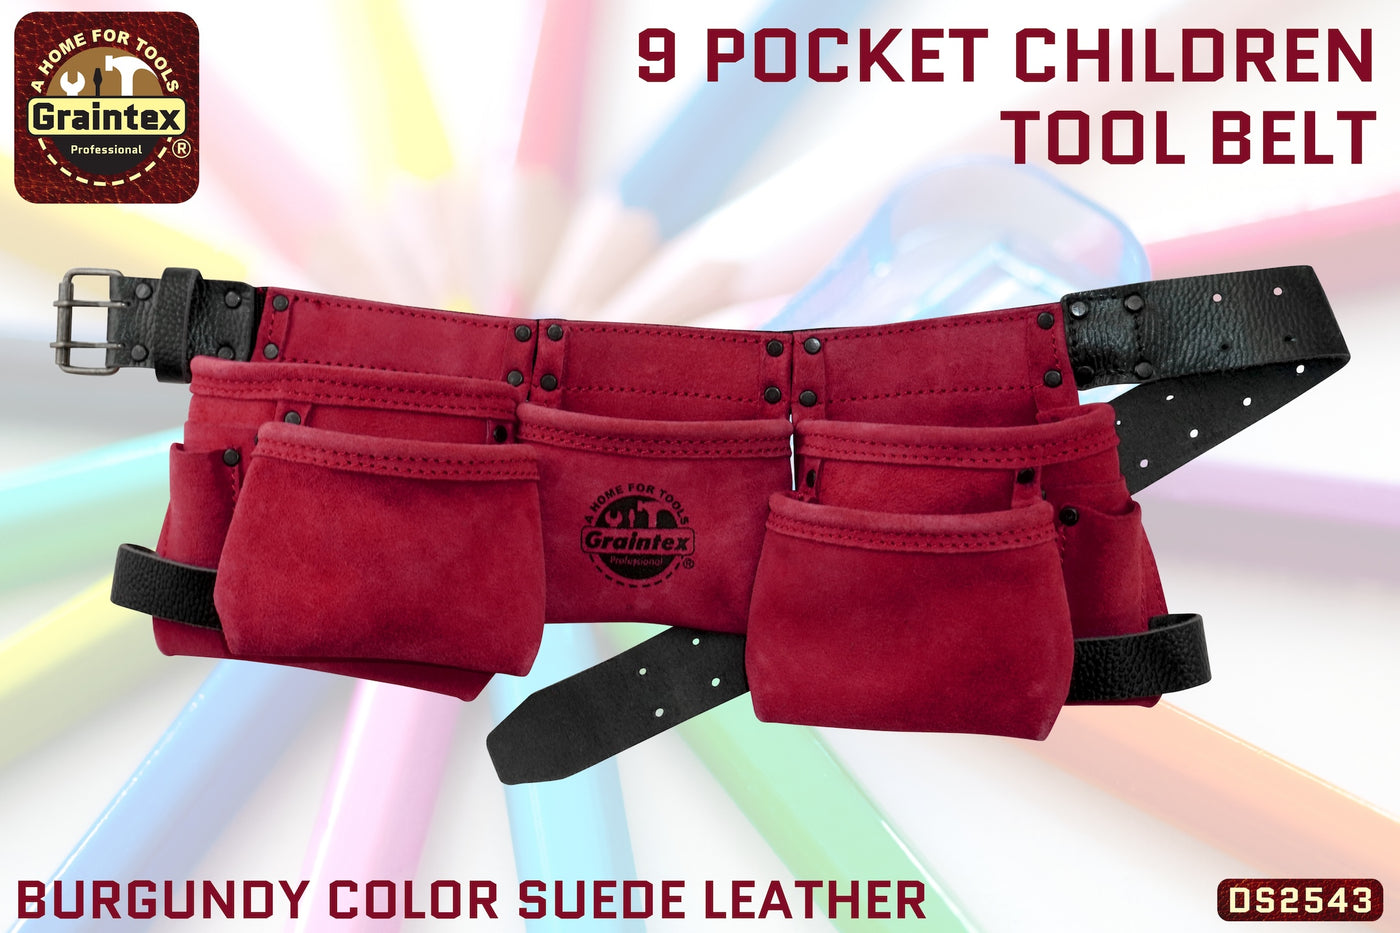 DS2543 :: 9 Pocket Children Tool Belt Burgundy Color Suede Leather